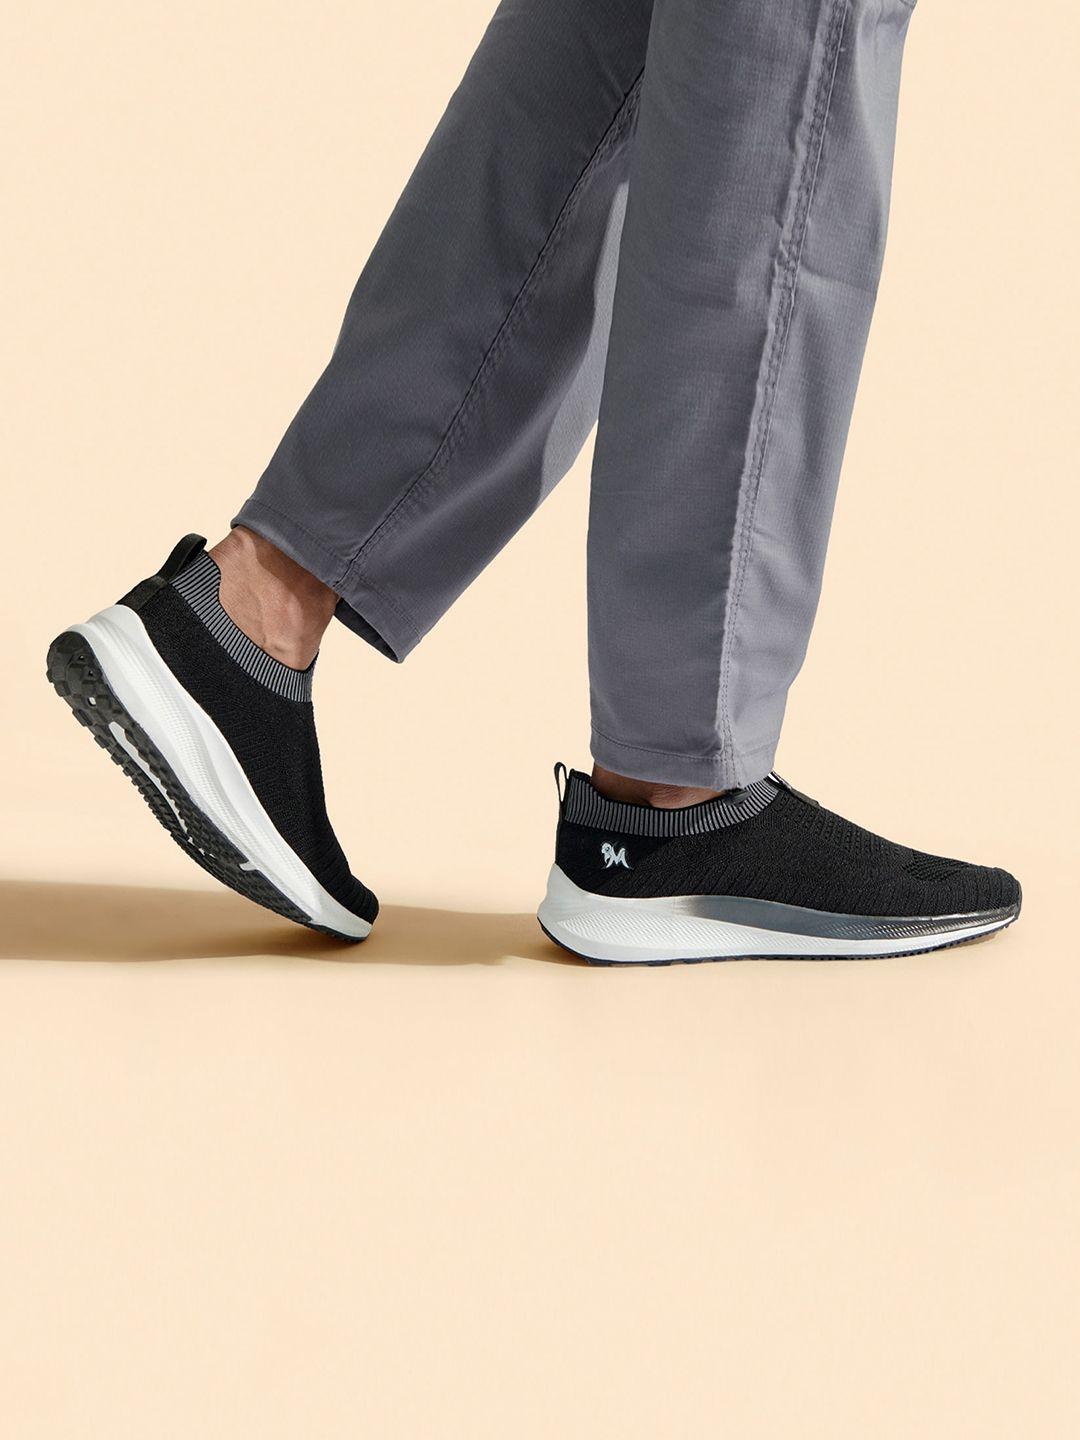 neemans-unisex-textured-lightweight-comfort-insole-contrast-sole-slip-on-sneakers